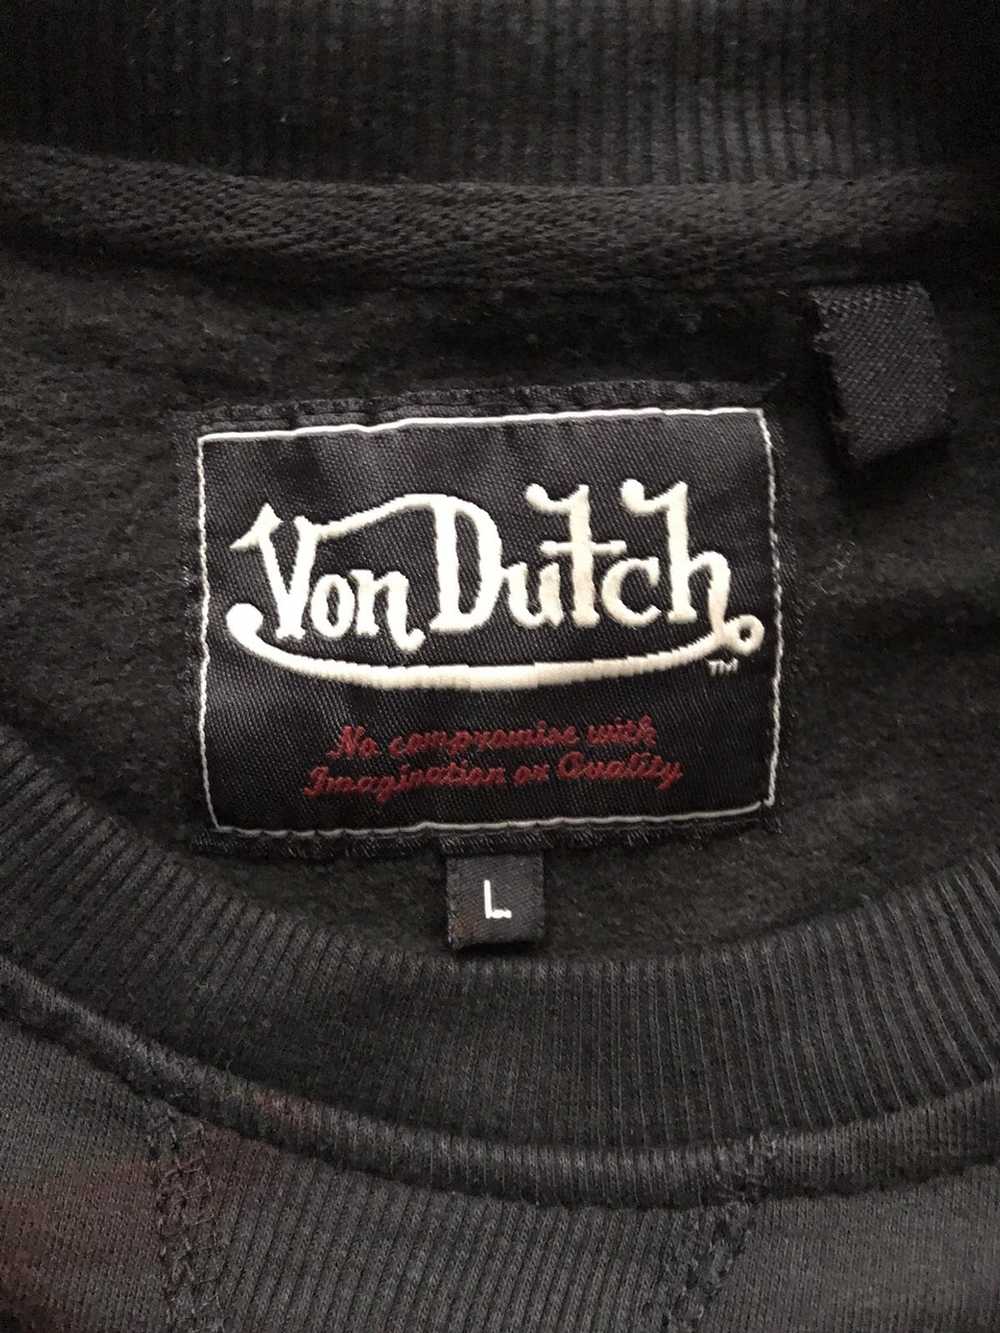 Von Dutch Von Dutch Sweatshirt - image 4